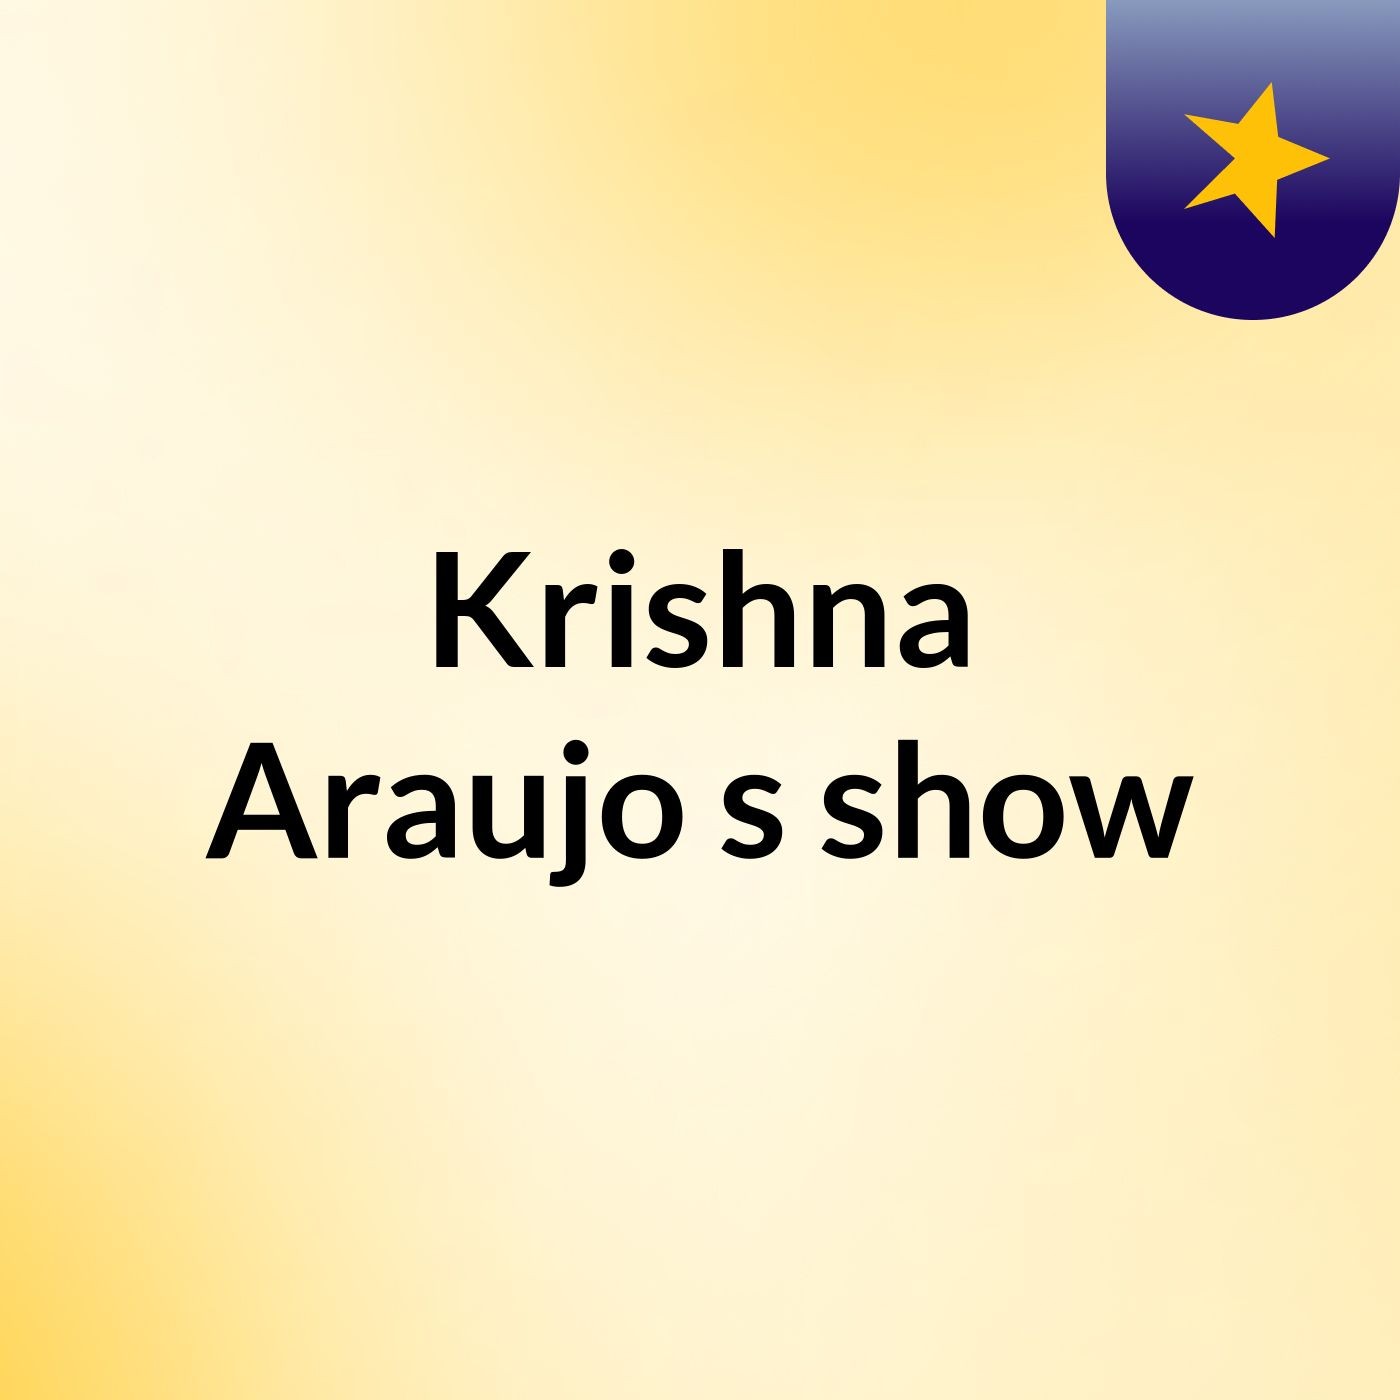 Krishna Araujo's show